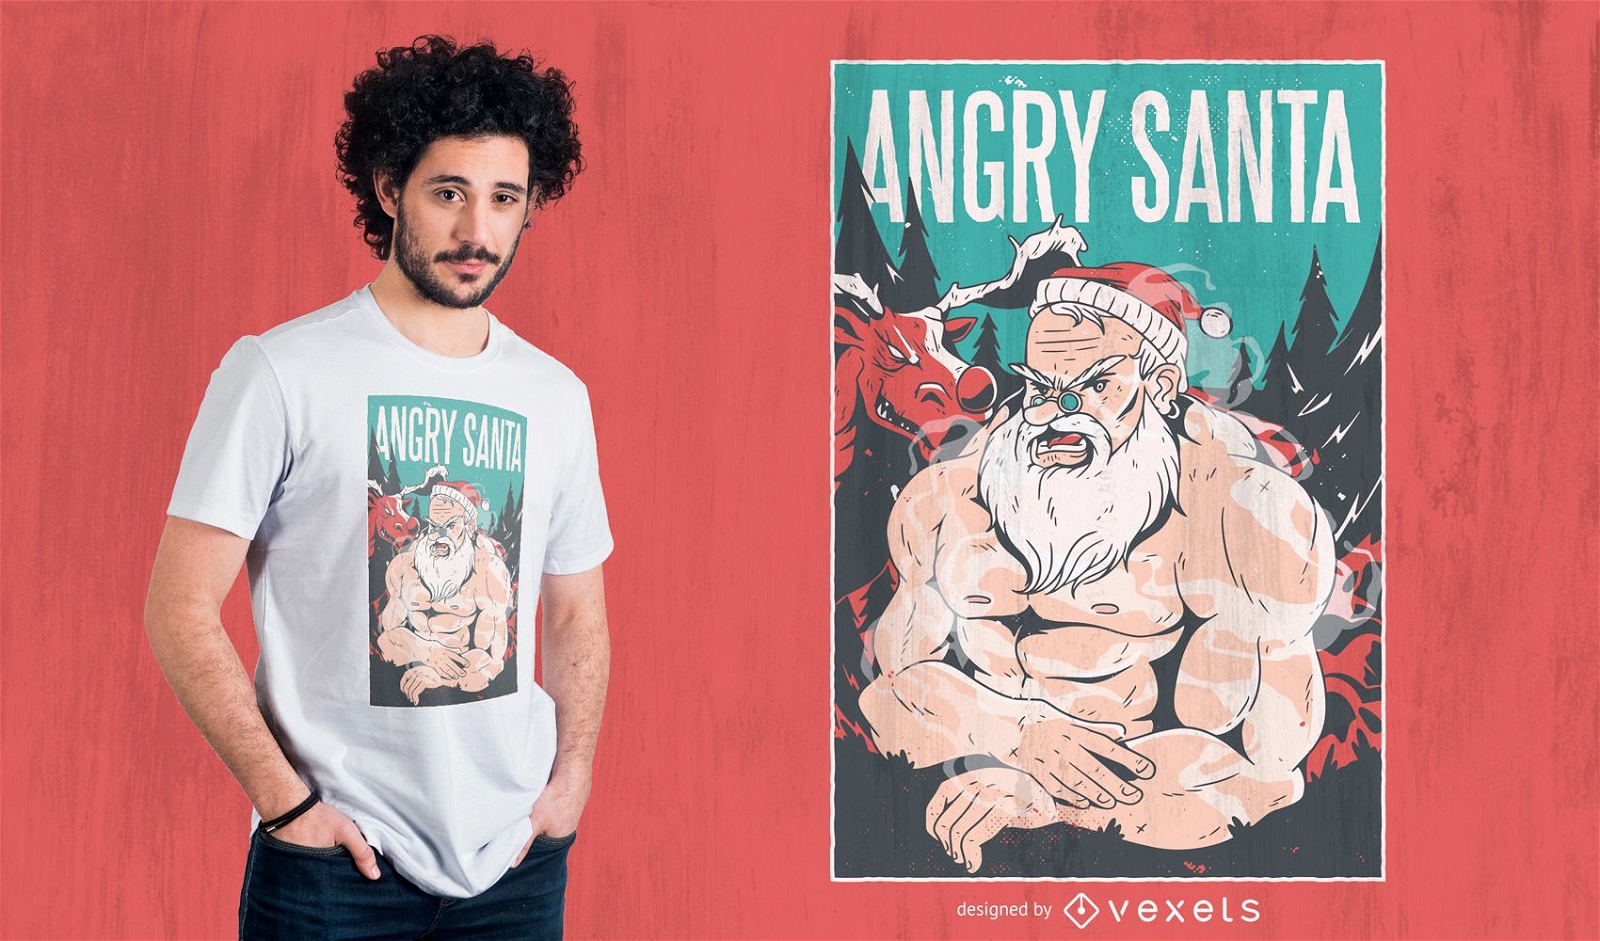 Angry santa t-shirt design